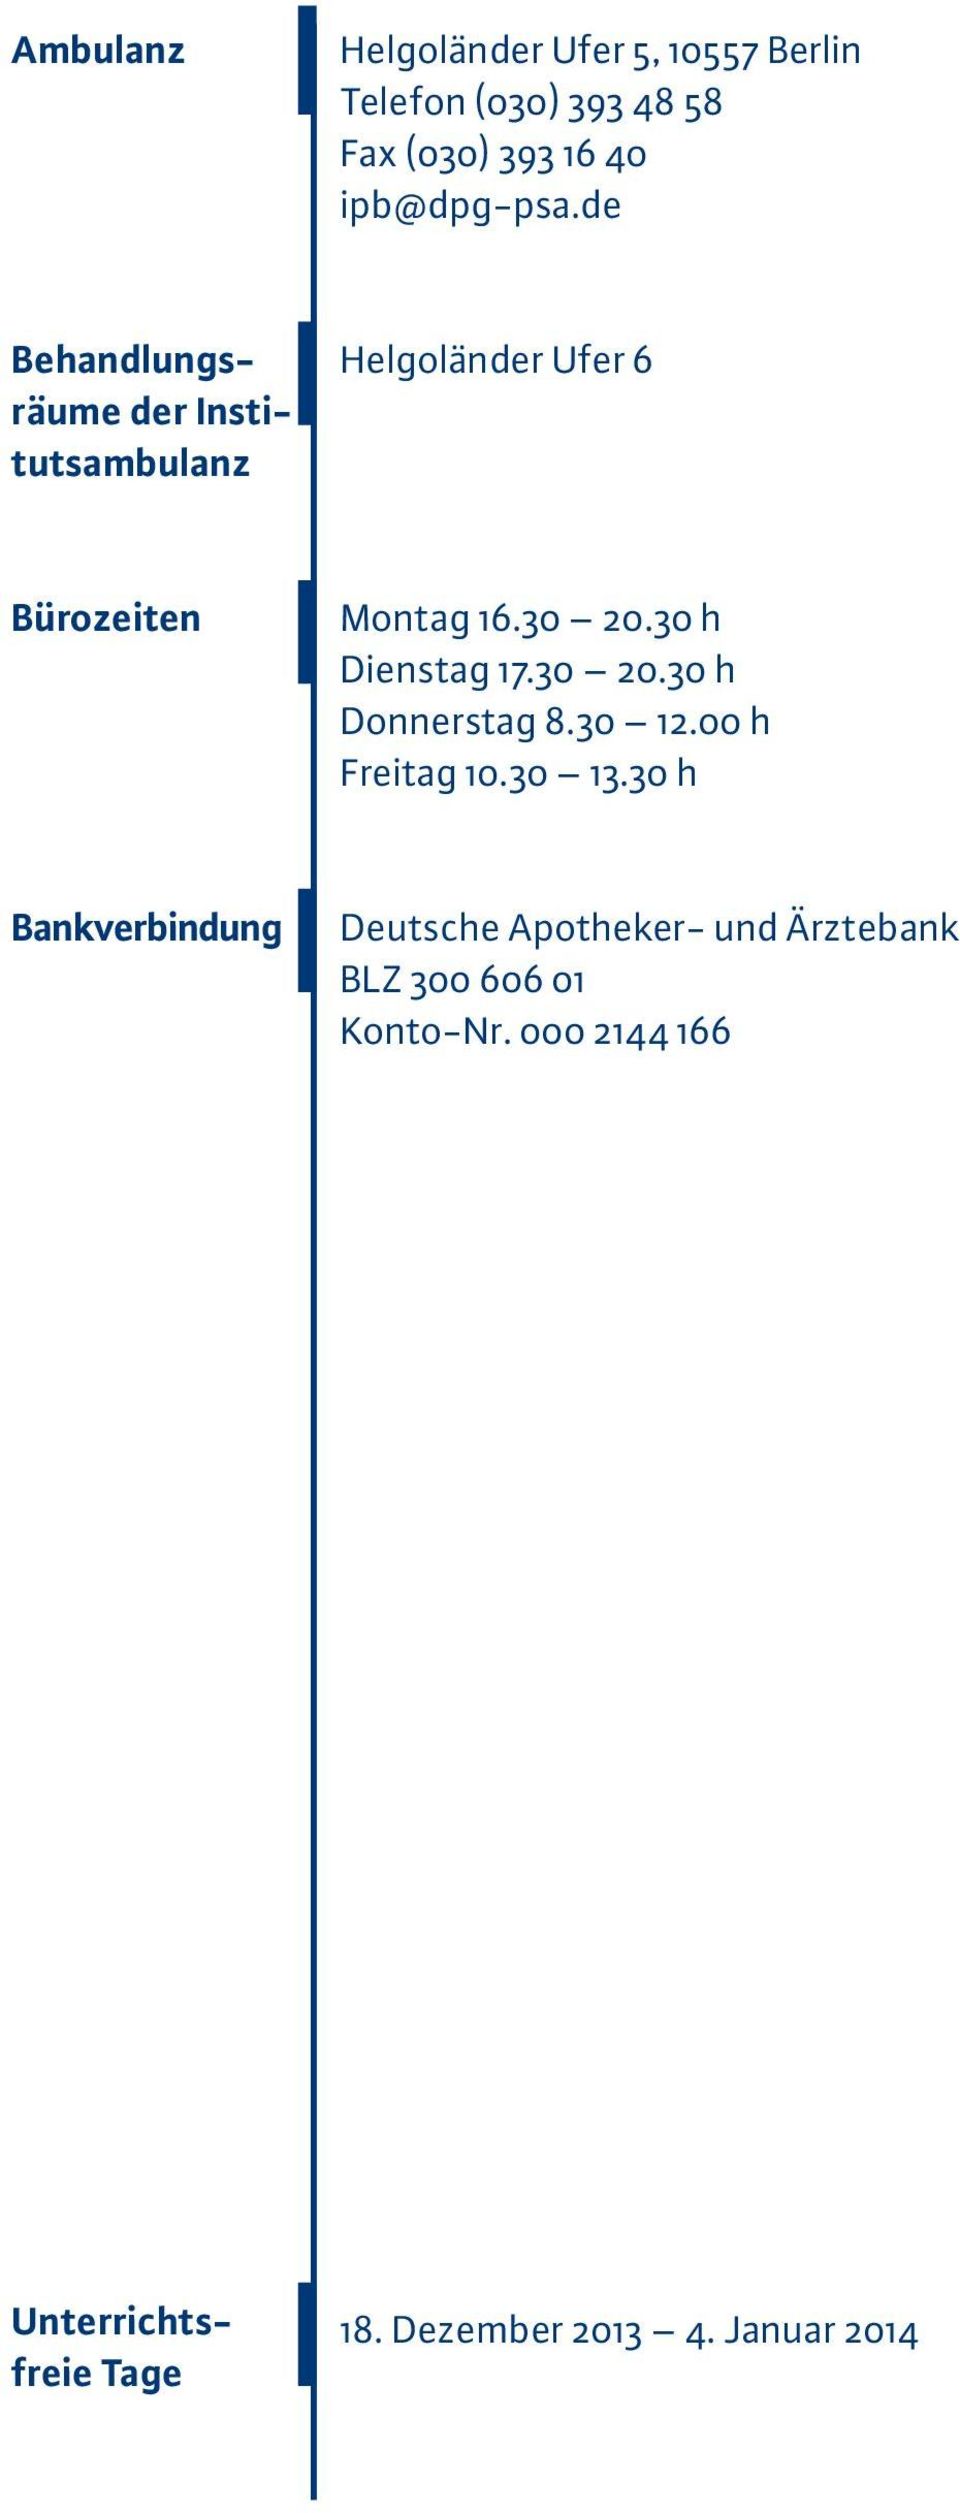 00 h Freitag 10.30 13.30 h Bankverbindung Deutsche Apotheker- und Ärztebank BLZ 300 606 01 Konto-Nr.